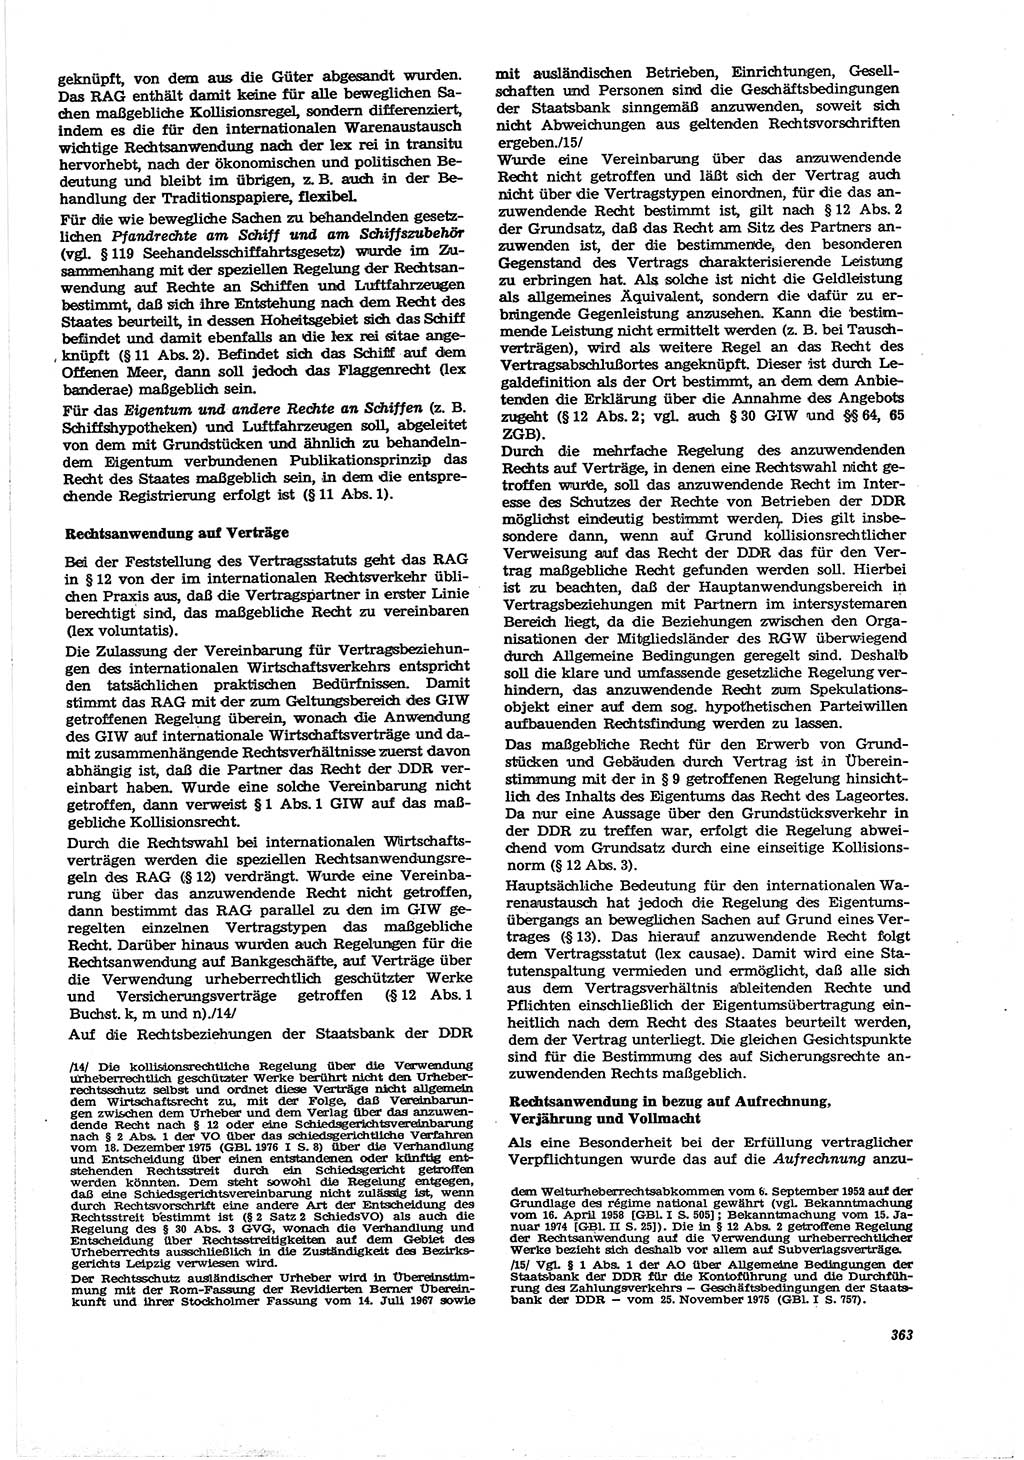 Neue Justiz (NJ), Zeitschrift für Recht und Rechtswissenschaft [Deutsche Demokratische Republik (DDR)], 30. Jahrgang 1976, Seite 363 (NJ DDR 1976, S. 363)